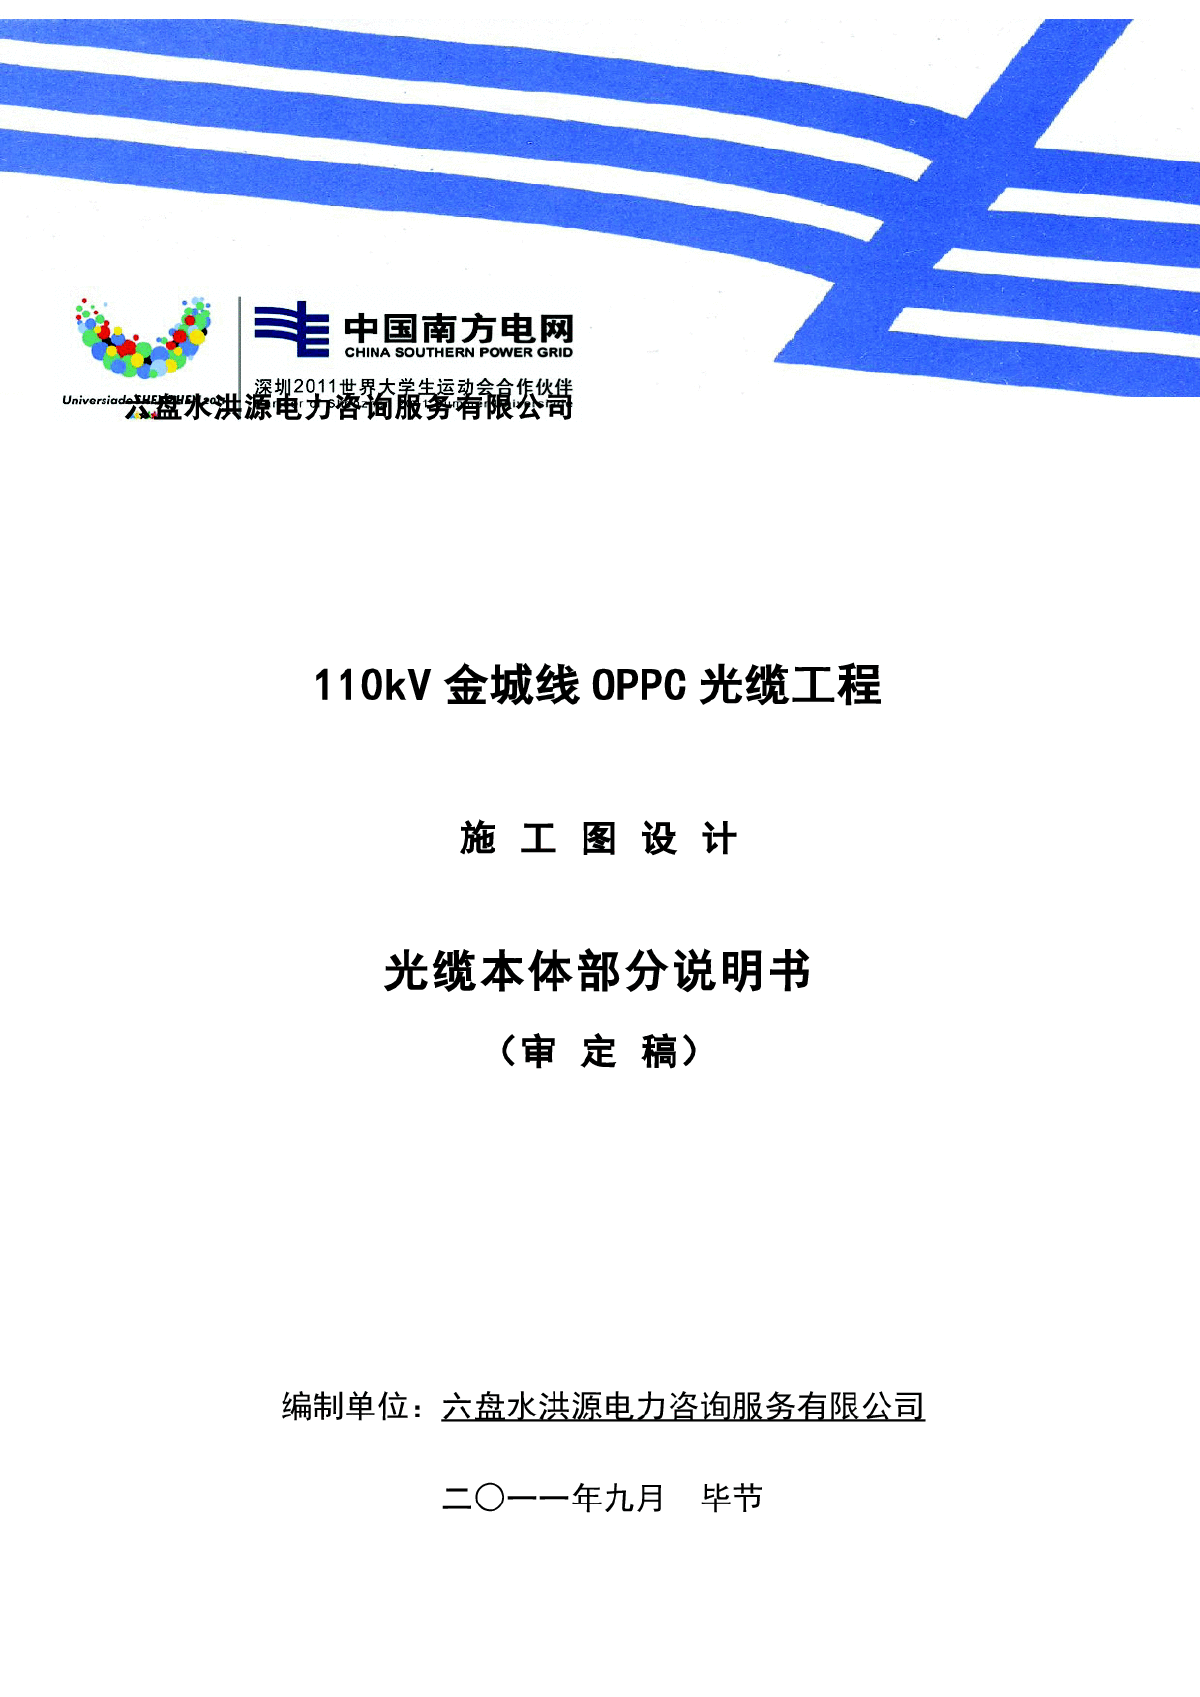 110k金城线OPPC光缆工程_施工图说明